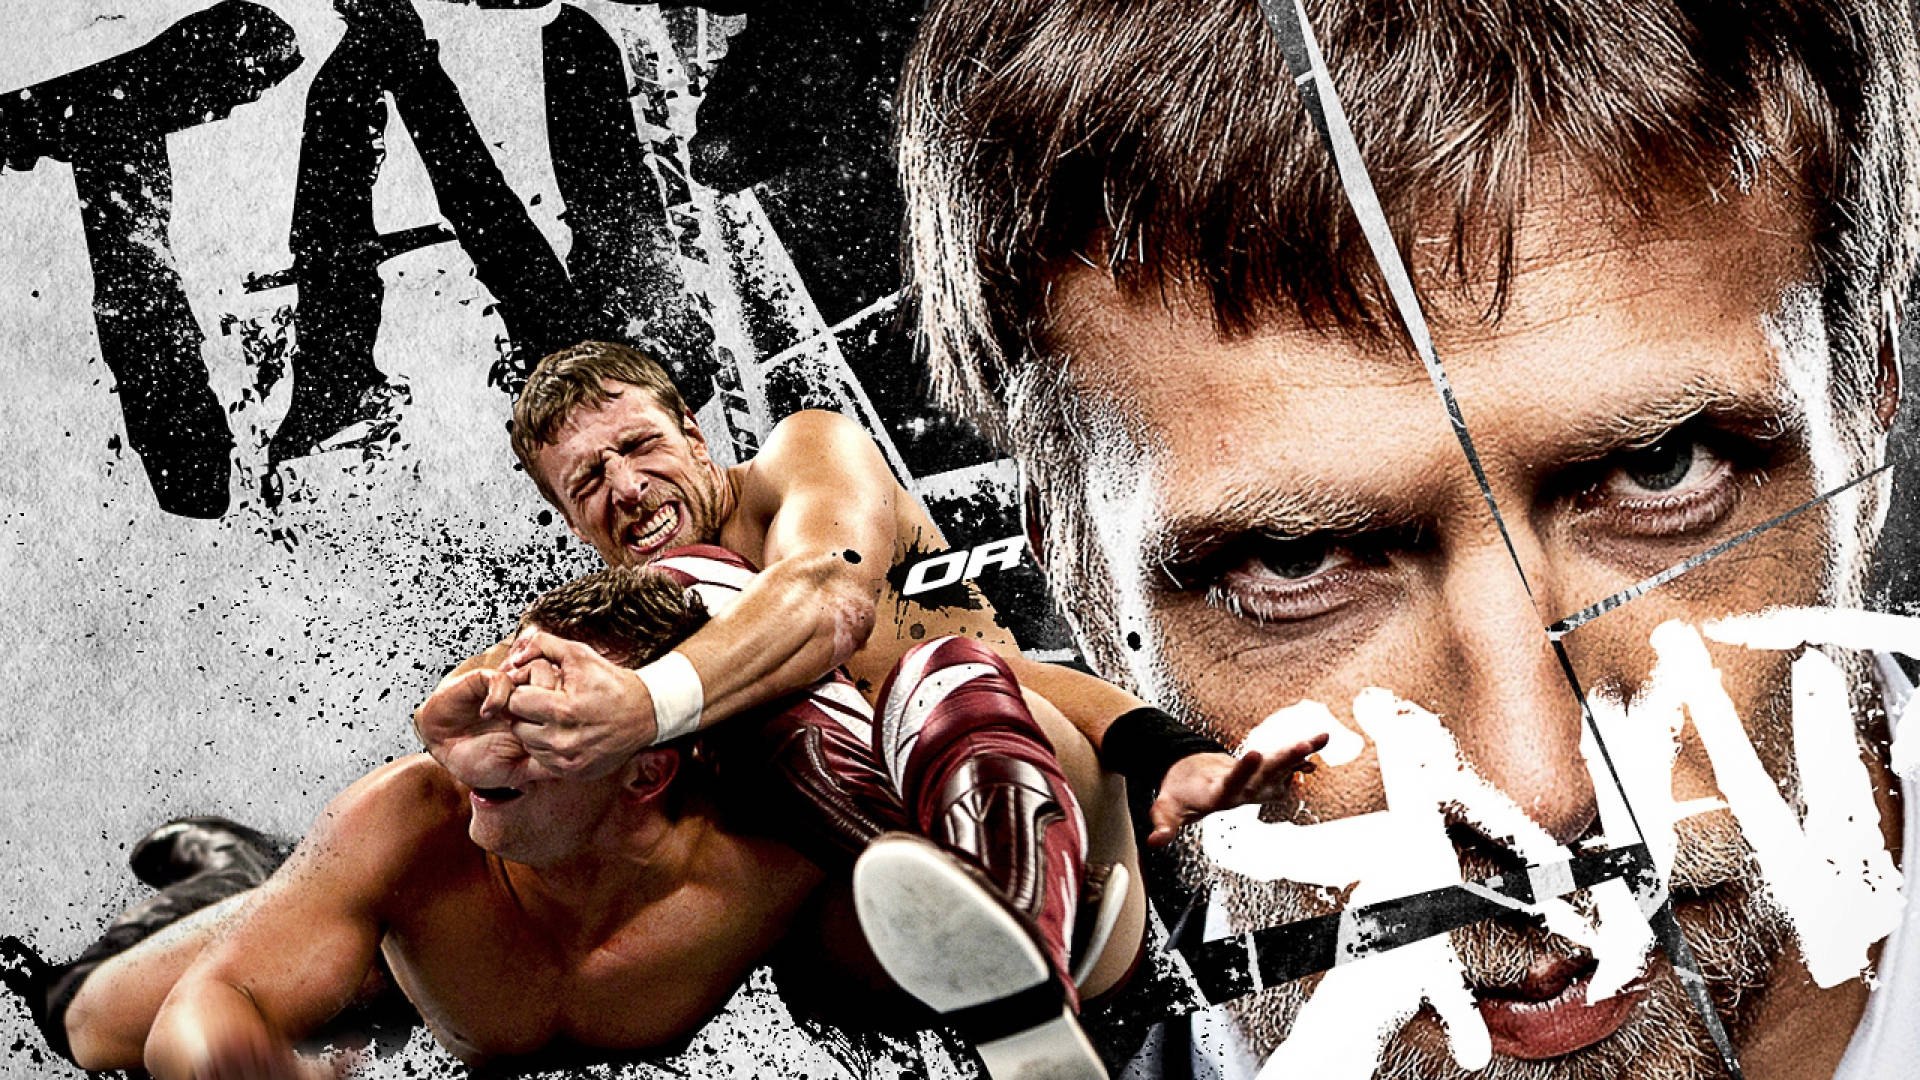 Momentous Wrestling Poster Wallpaper